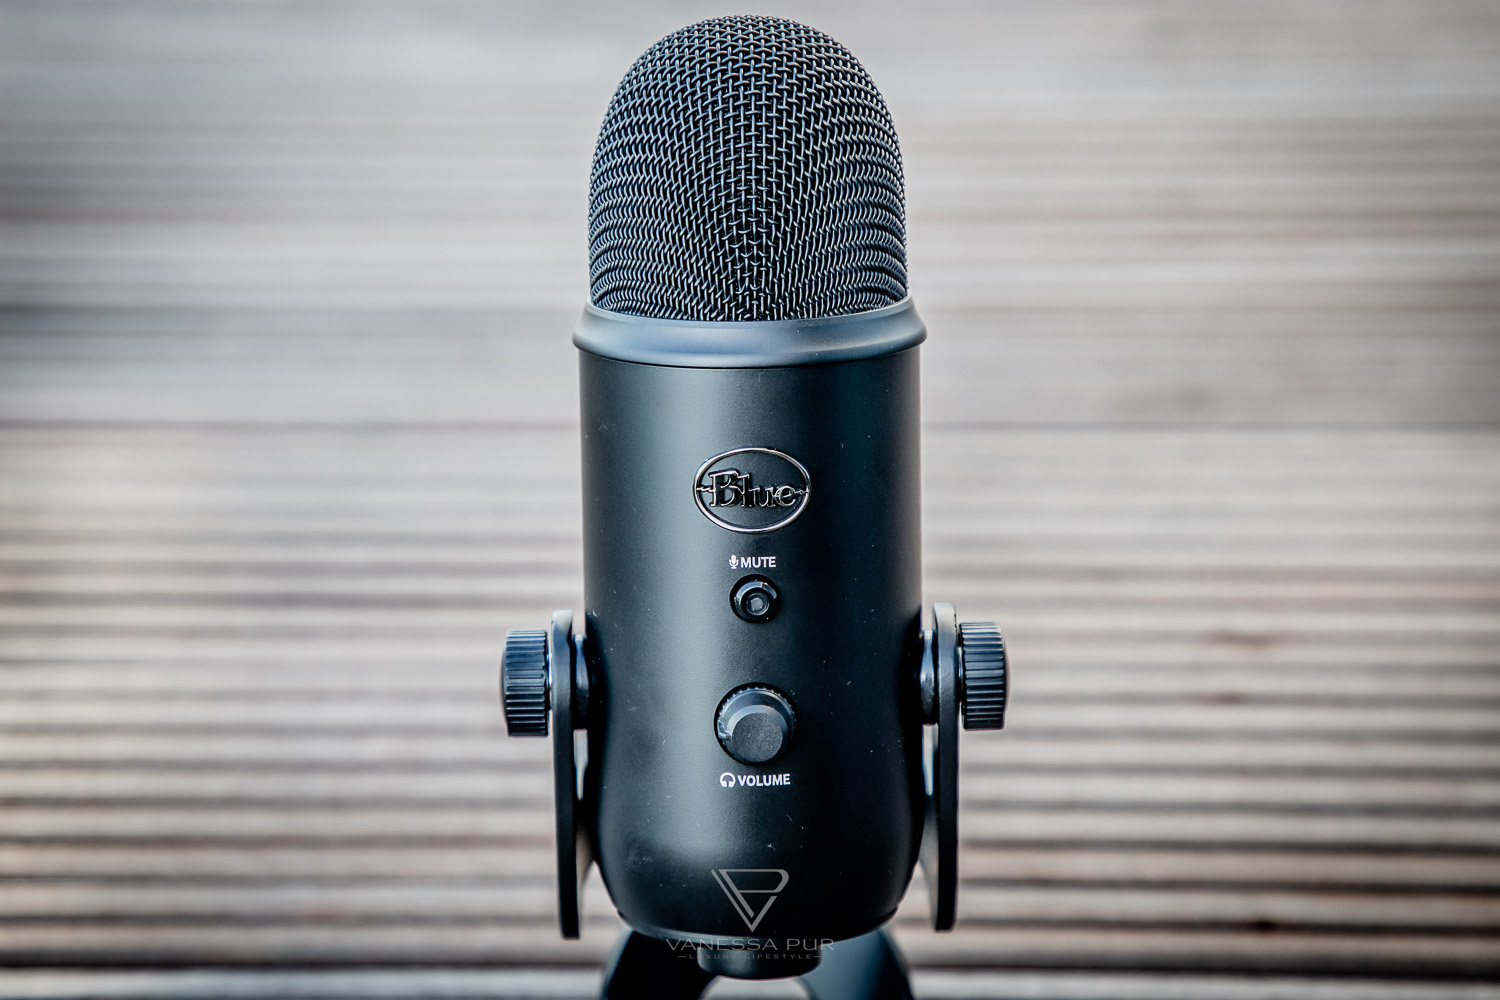 Blue Microphone Yeti USB Mikrofon für Podcasts und YouTube Videos im Test - Podcast-Mikrofon mit USB Anschluss - Bewertung und Produkttest